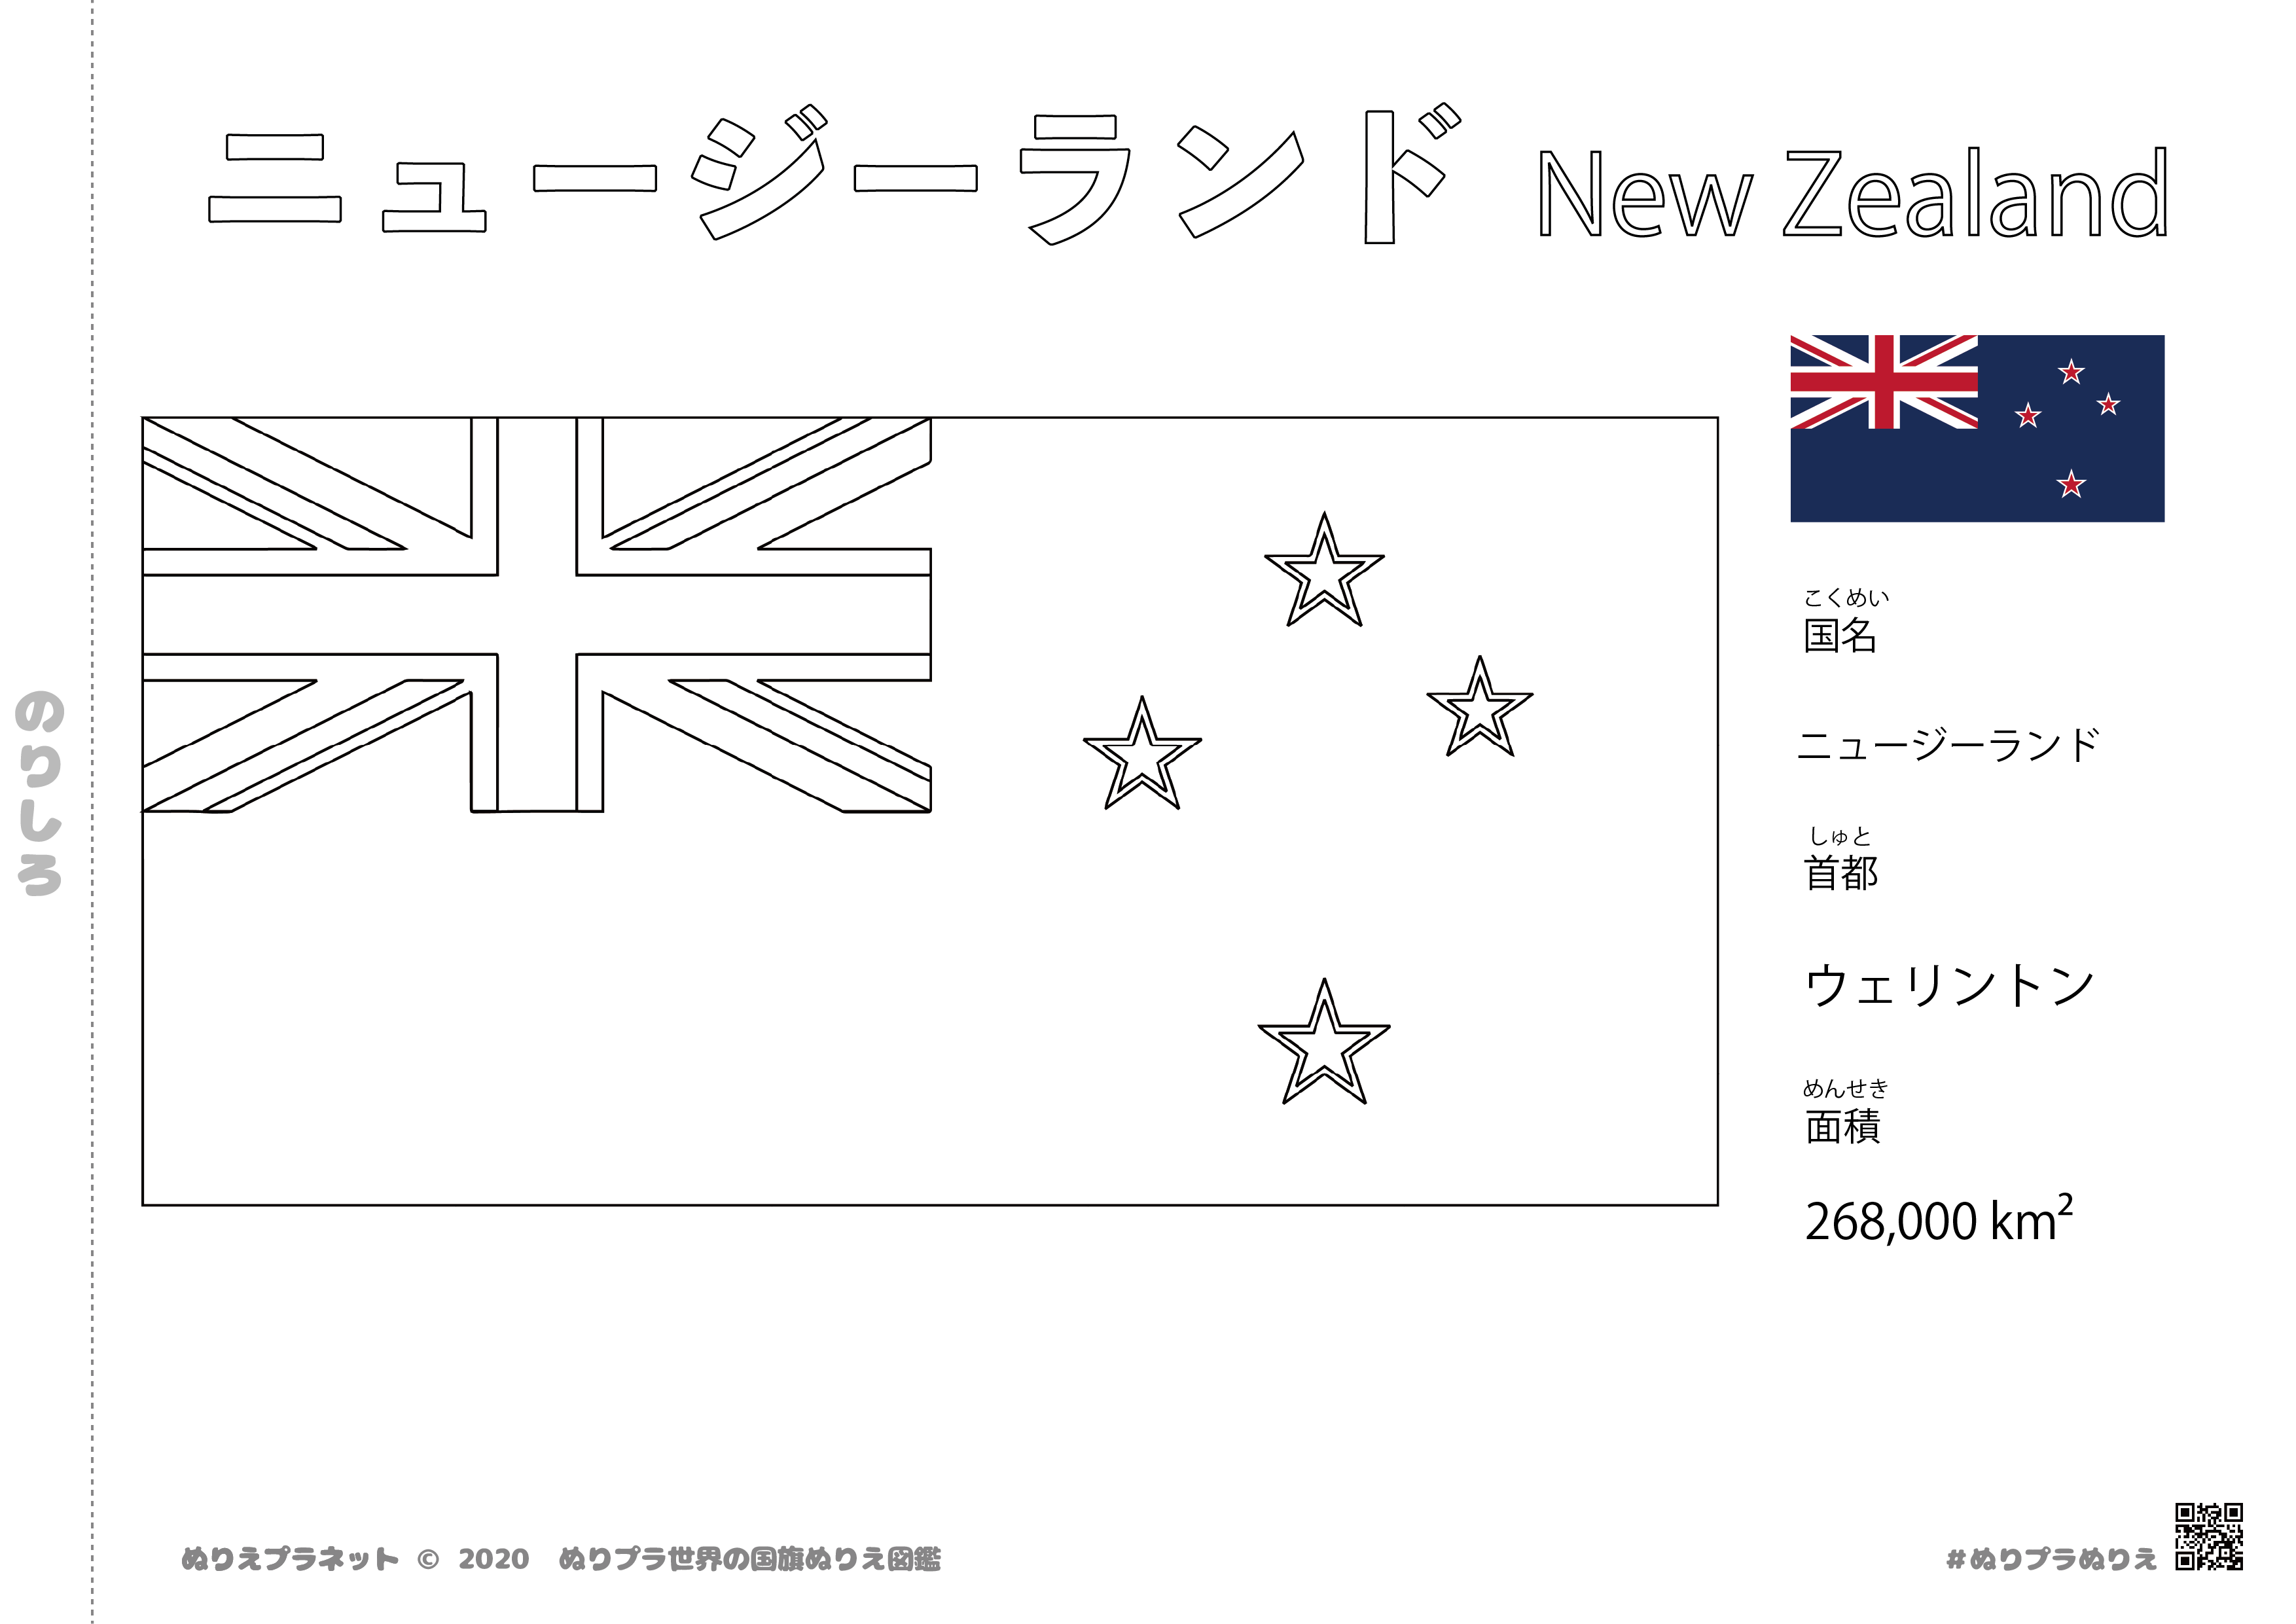 ニュージーランドの国旗塗り絵です。国名、首都、面積も覚えられます。